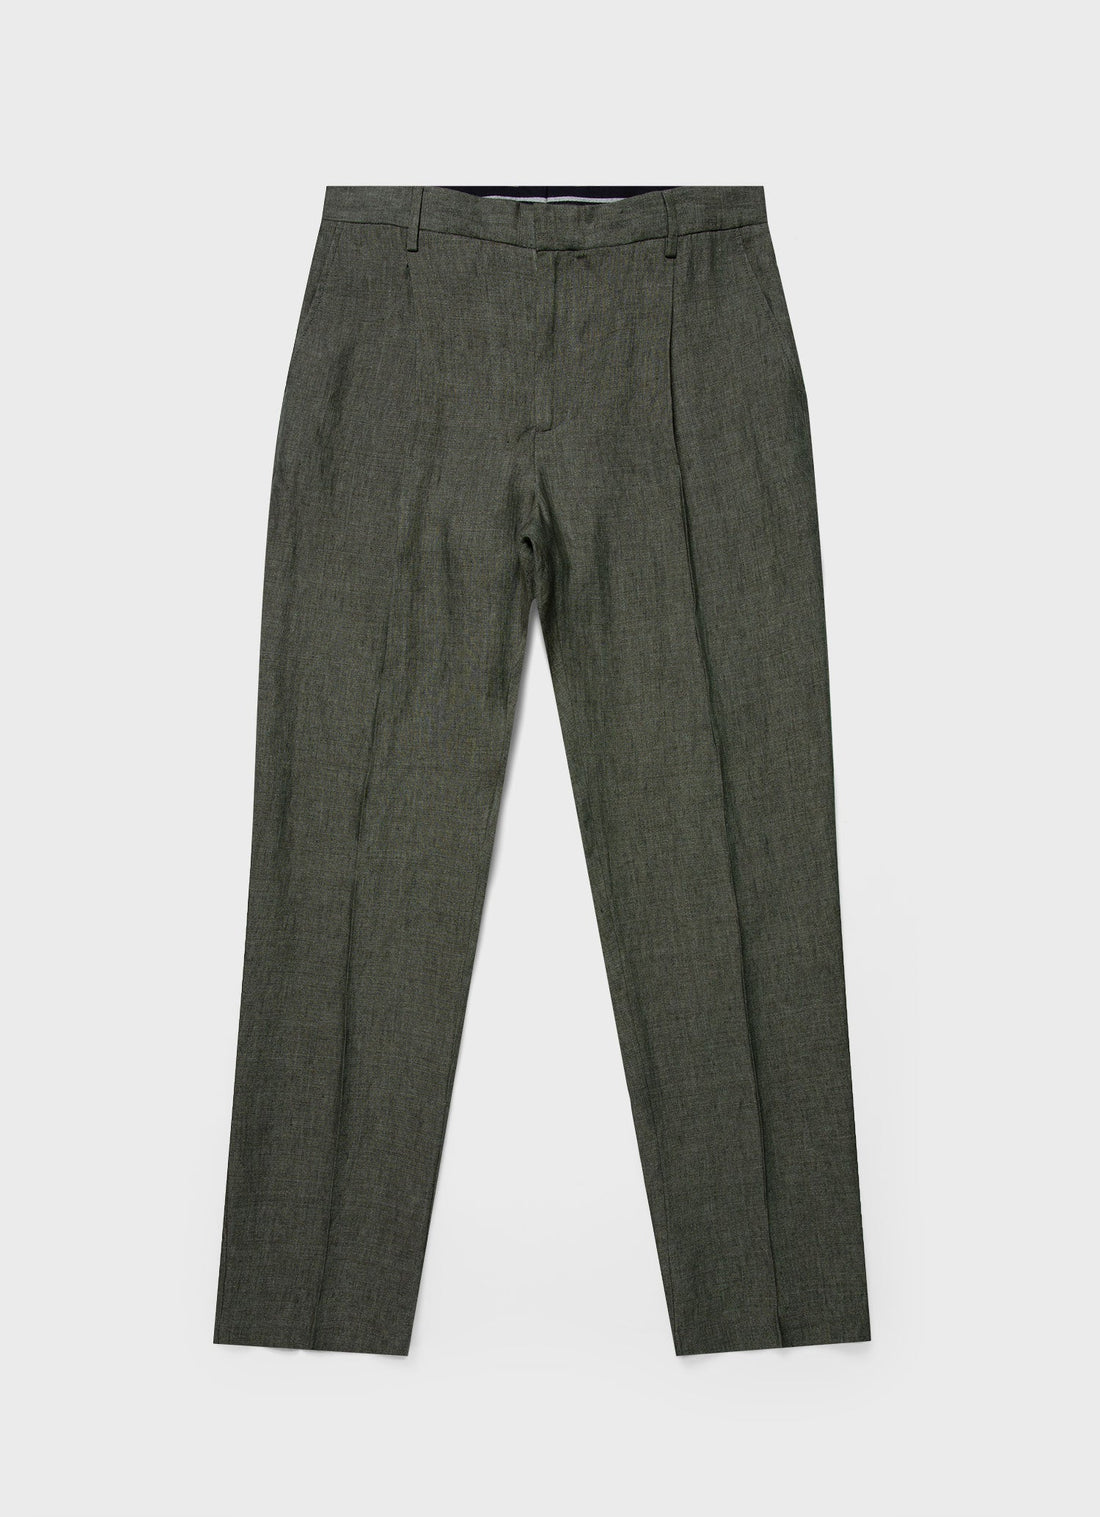 Men's Pleated Linen Trouser in Light Khaki